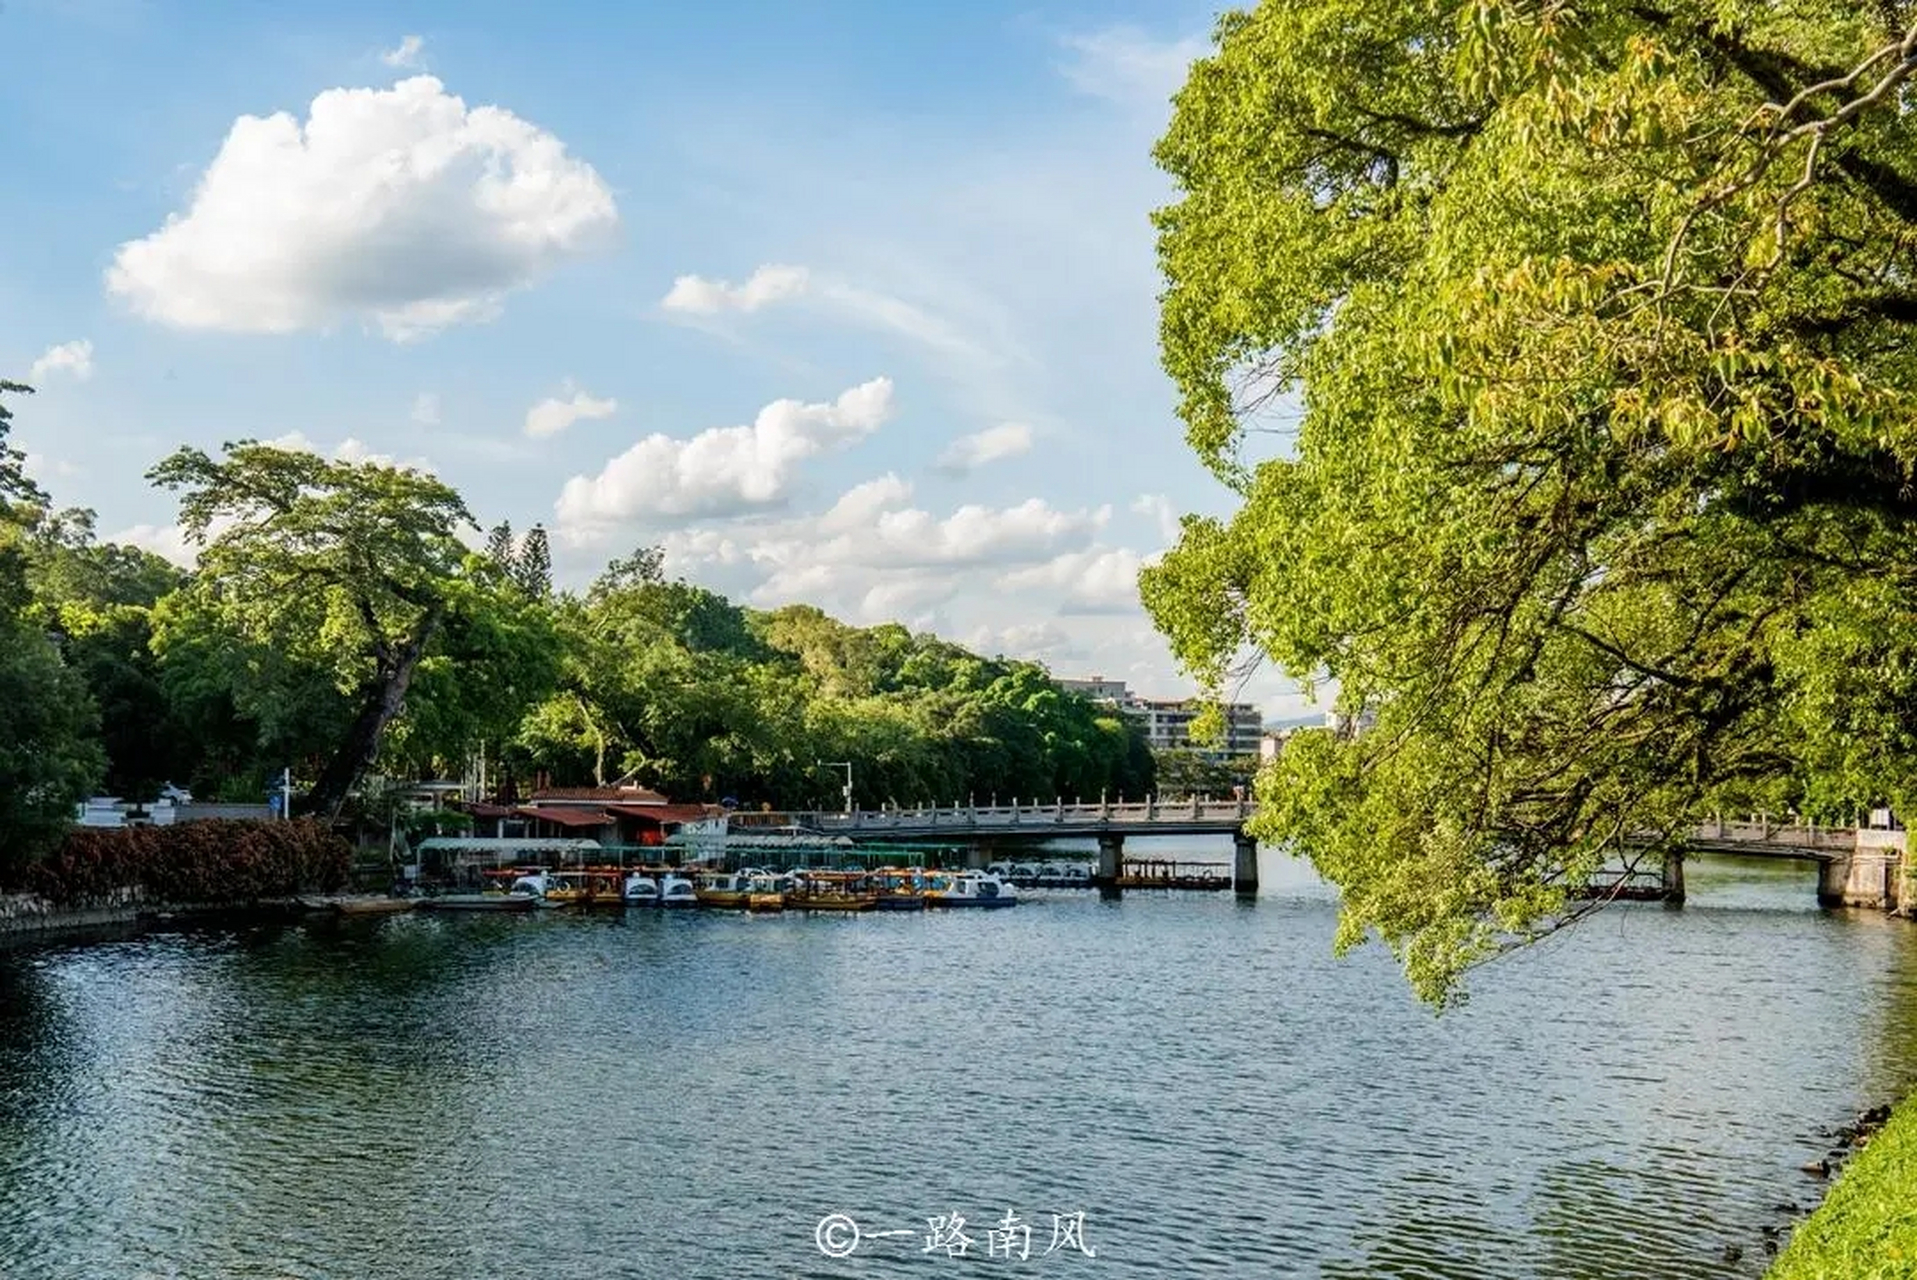 杭州西湖名气很大,潮州西湖的面积虽然小很多,但风景也很出众,如果你